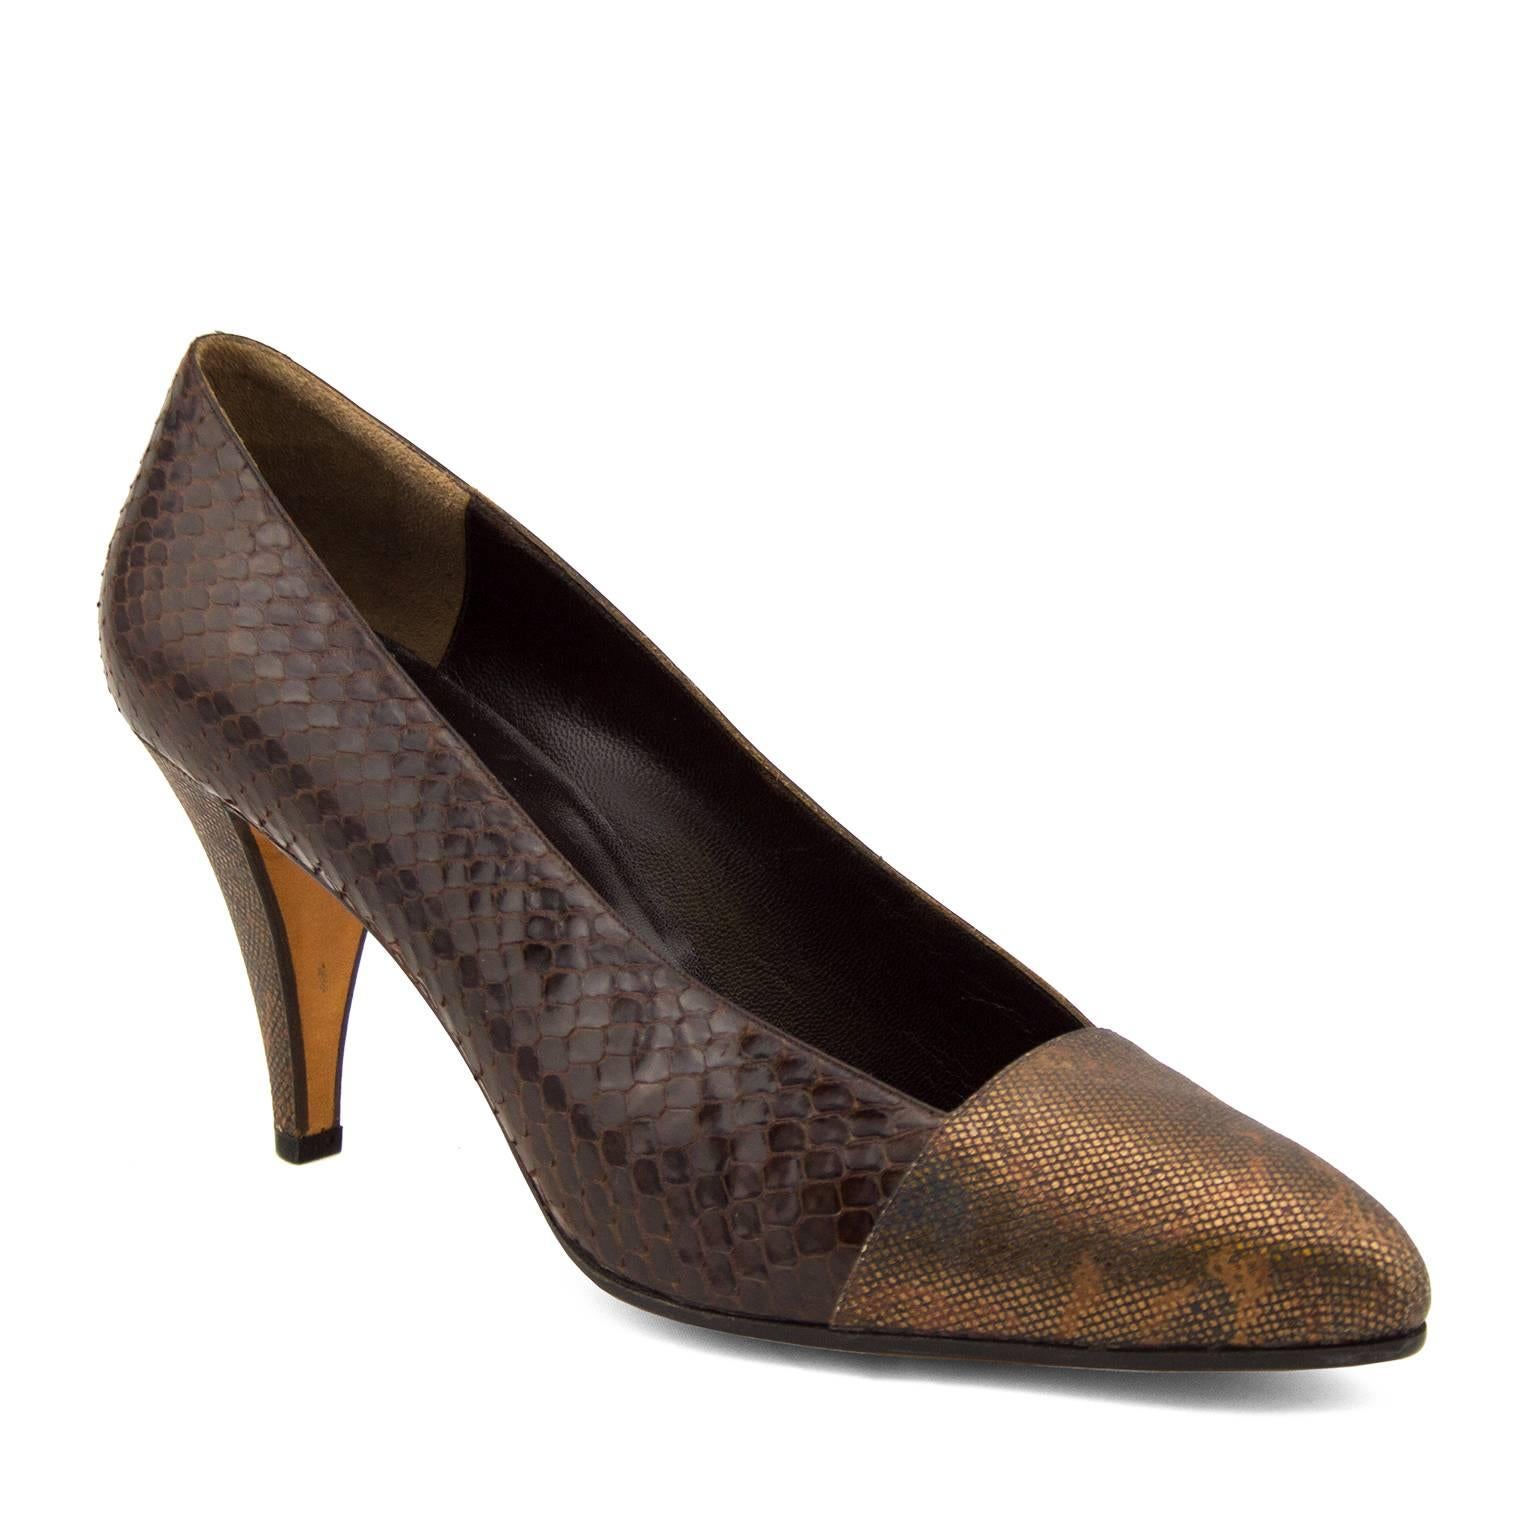 Pompe des années 1980 en bronze et matériaux mixtes bruns par Andrea Pfister. L'extérieur de la chaussure est brun foncé tandis que l'intérieur est en cuir souple brun. La pointe et le talon sont recouverts d'un cuir texturé bronze. Les semelles